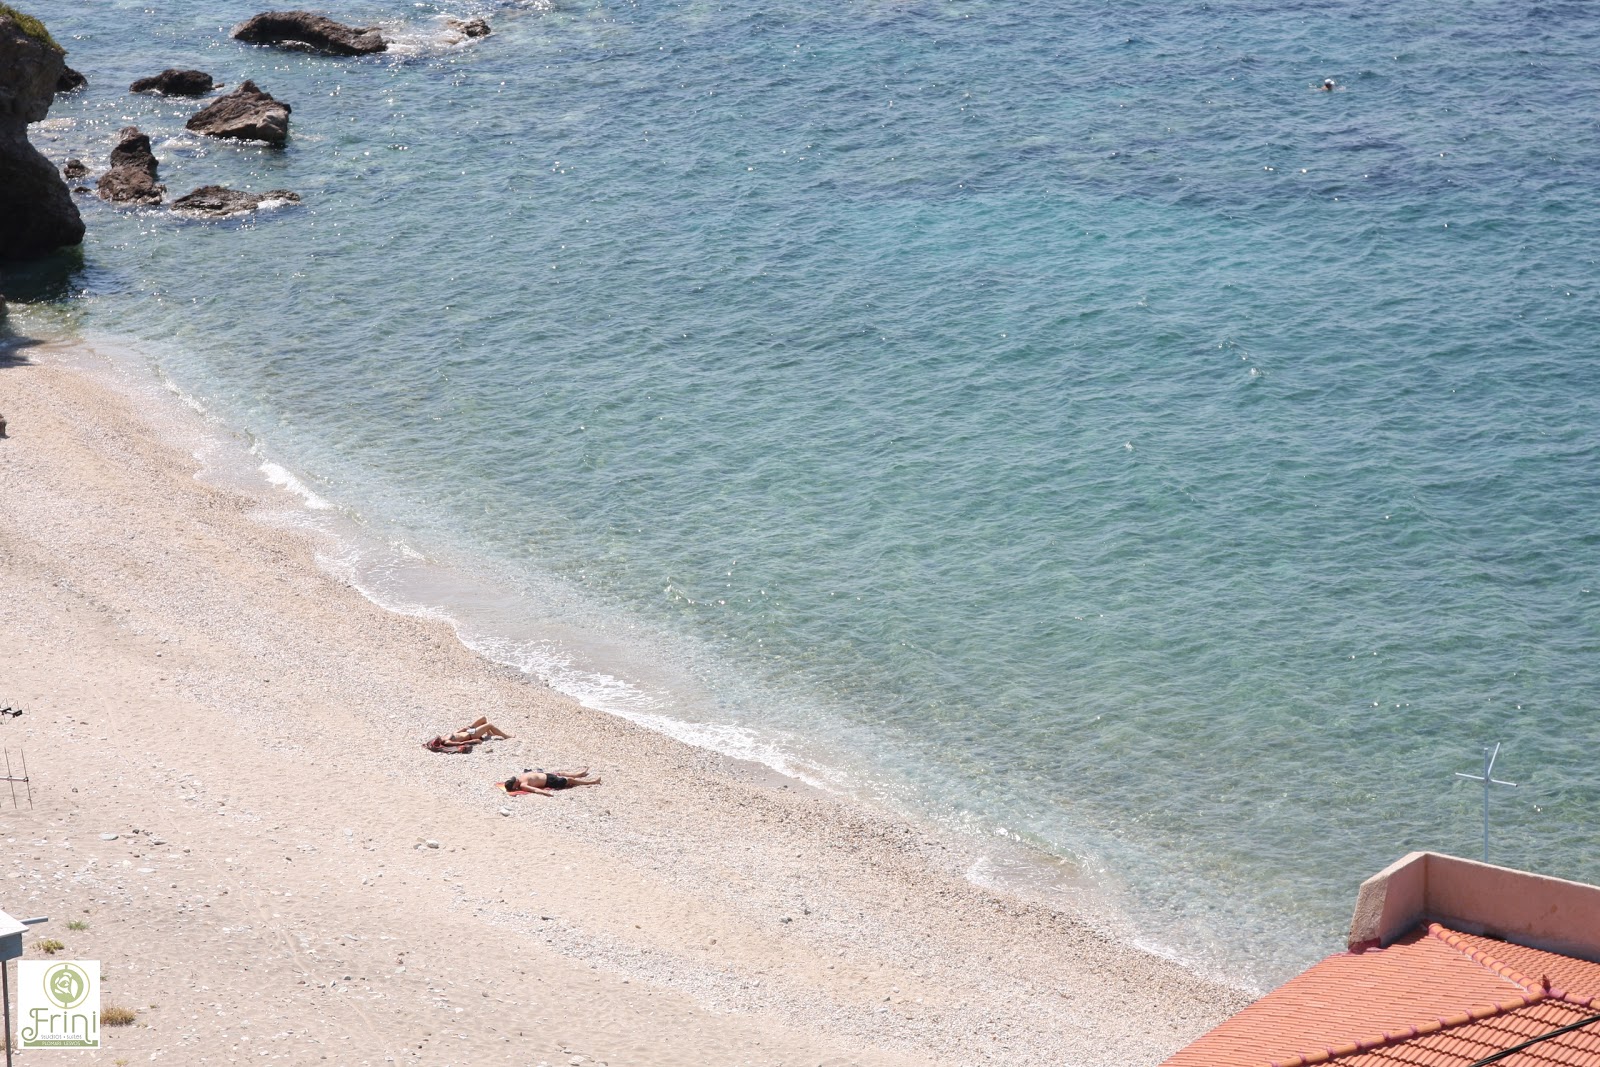 Plomari beach Saint Isidoros'in fotoğrafı turkuaz saf su yüzey ile